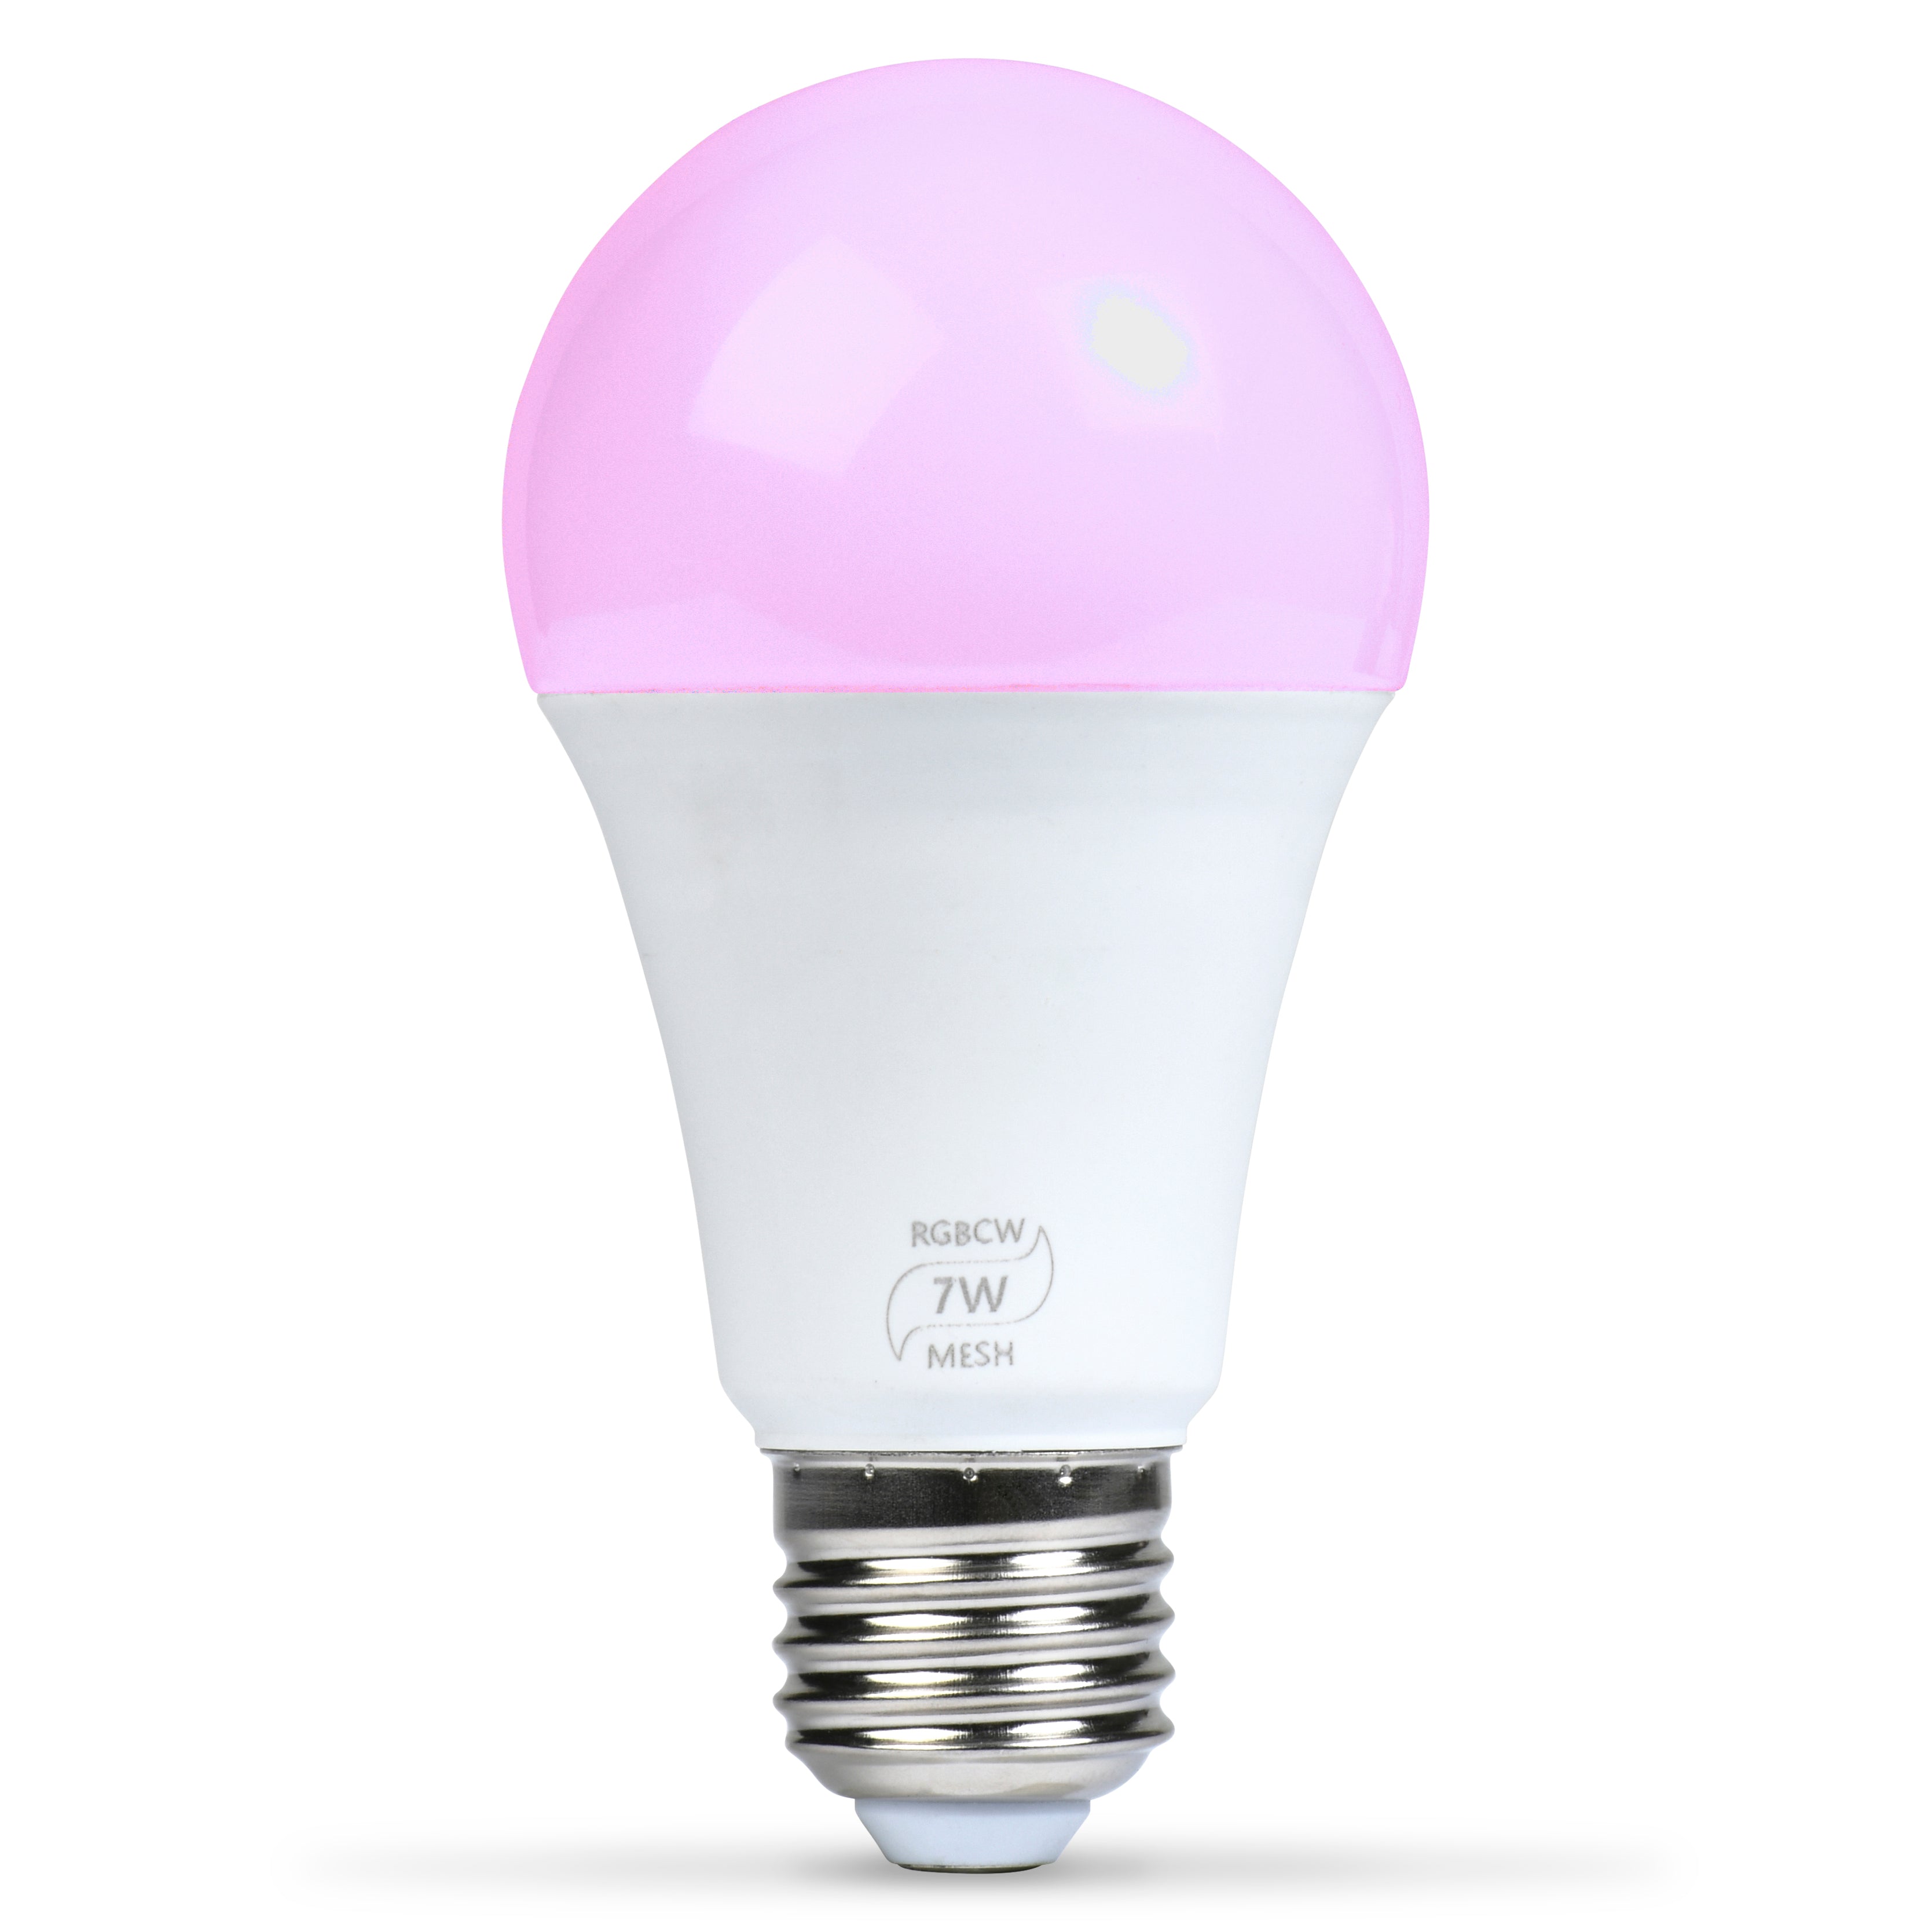 Flux Smart LED Light Bulb – Flux Smart Lighting